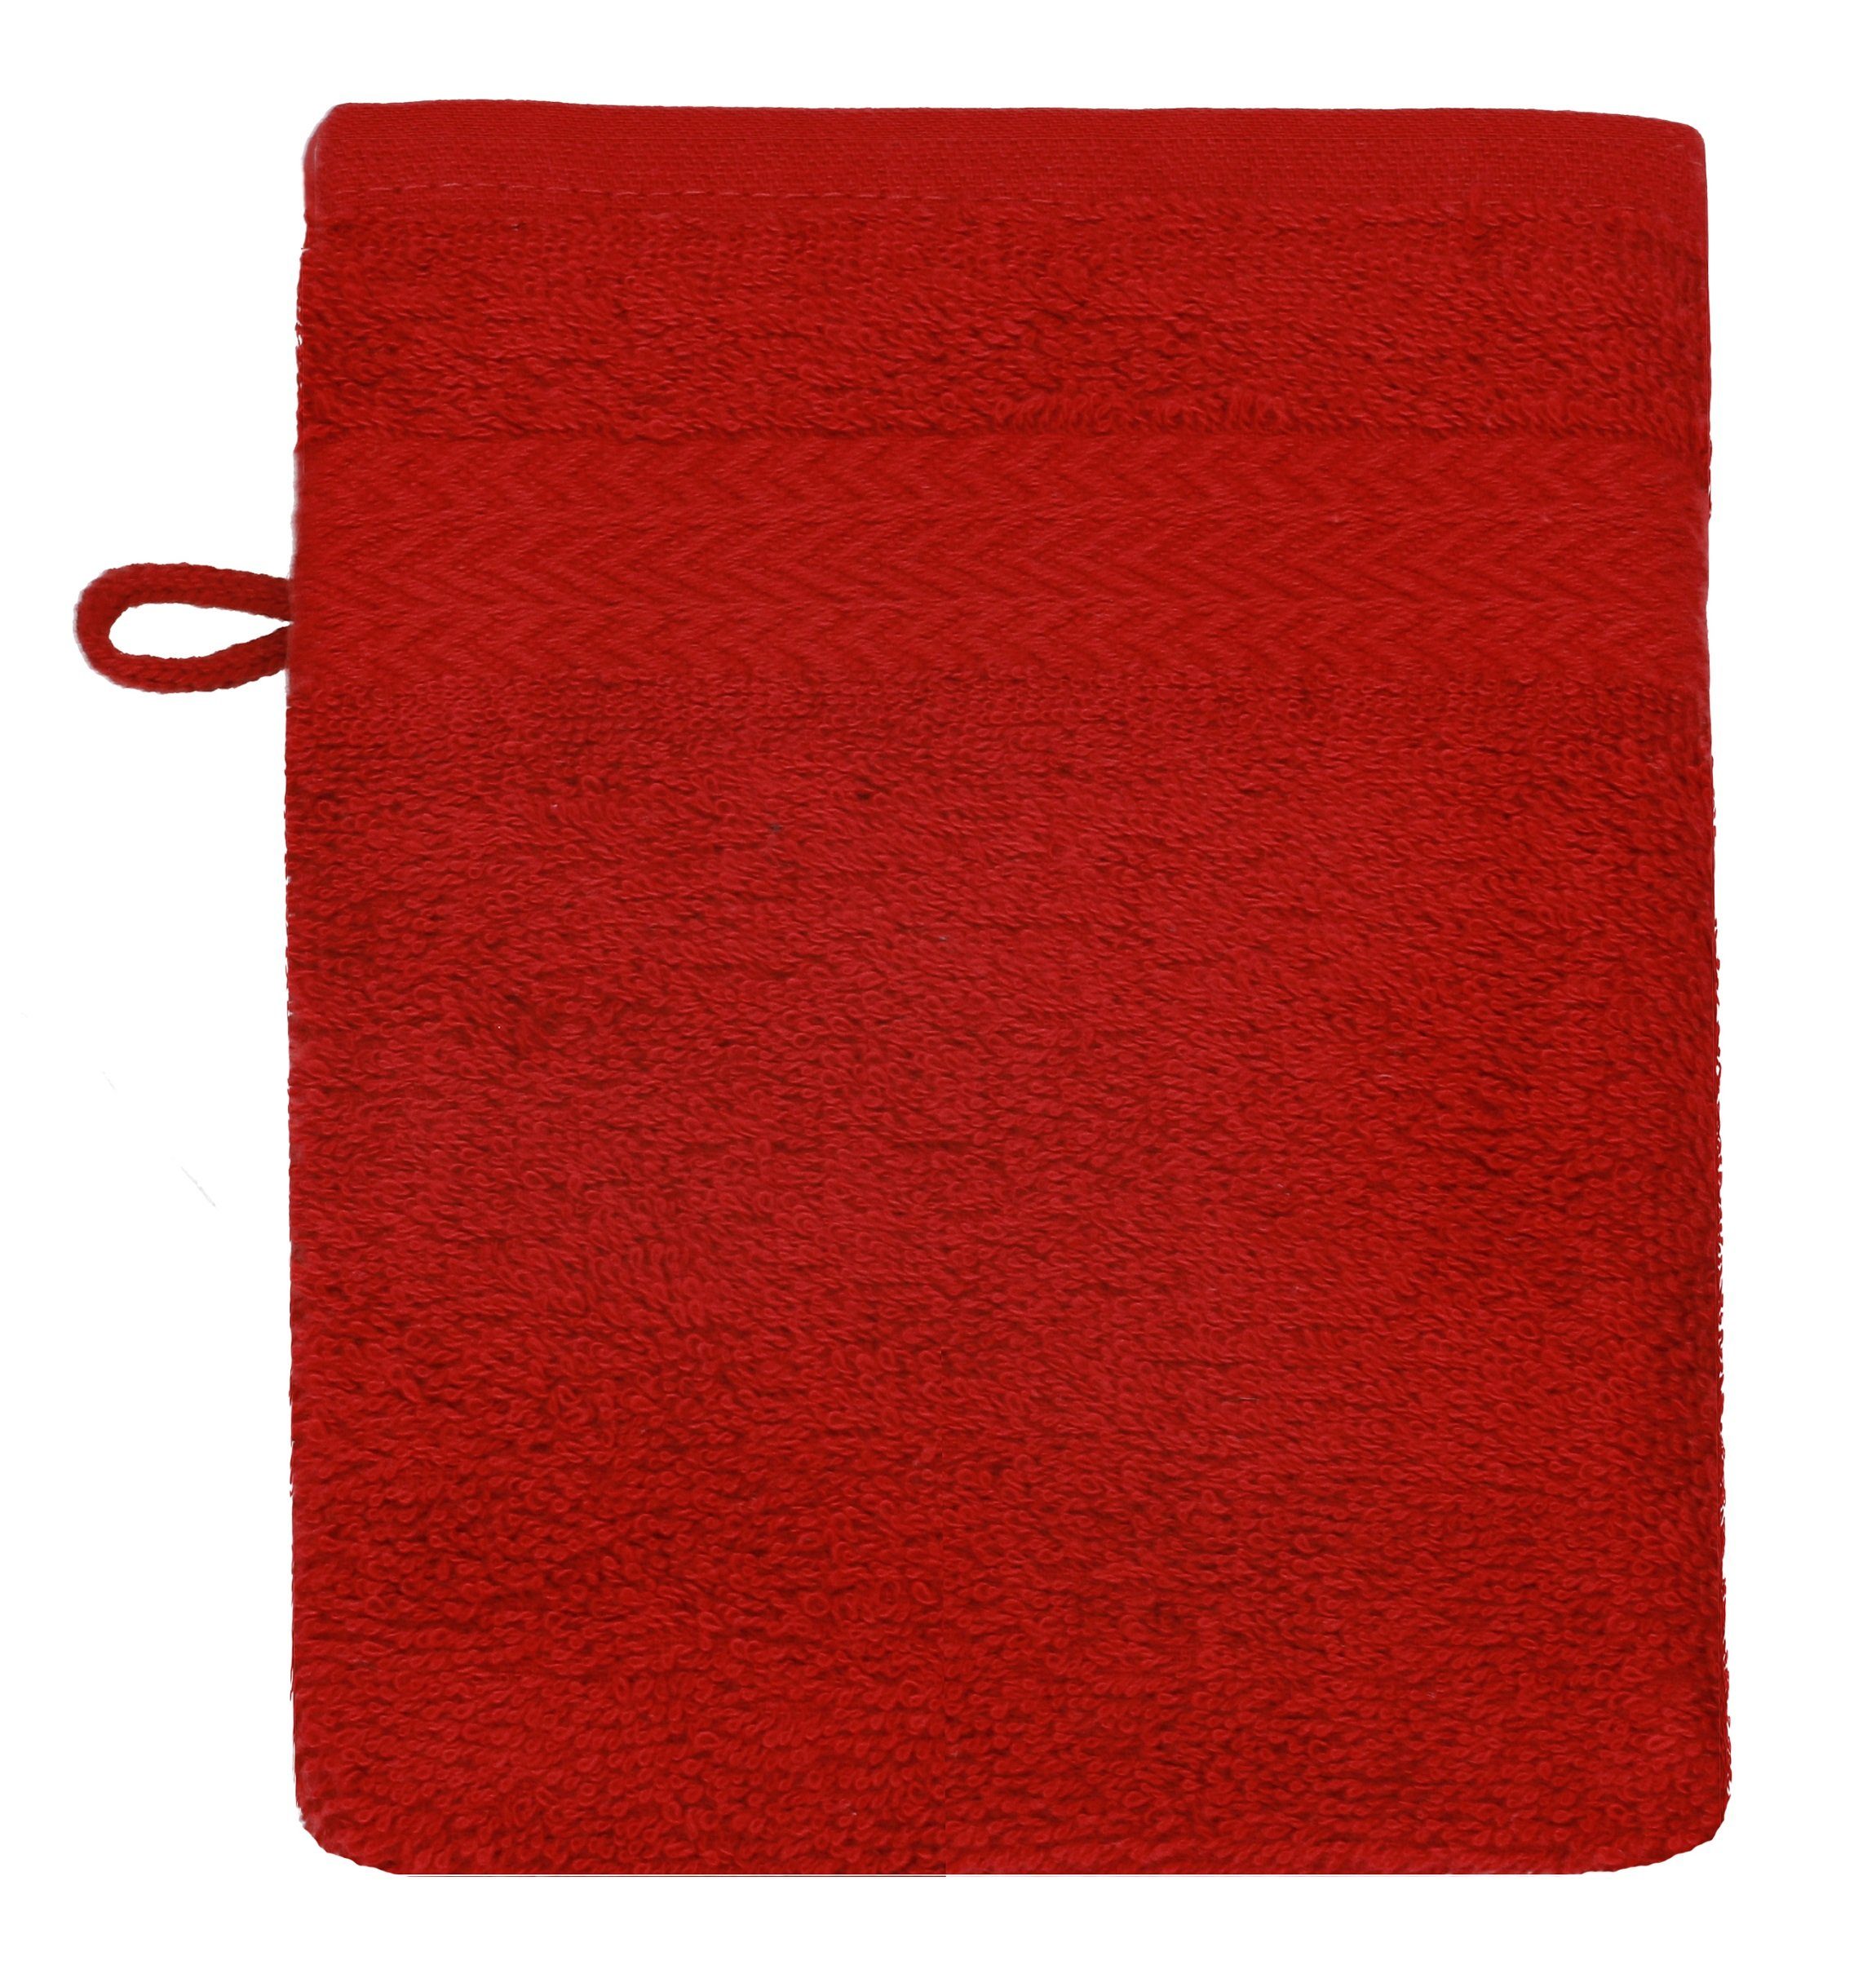 Stück Waschlappen Premium und Waschhandschuh cm dunkelrot nussbraun Farbe 16x21 100% Waschhandschuhe Set Baumwolle 10 Betz